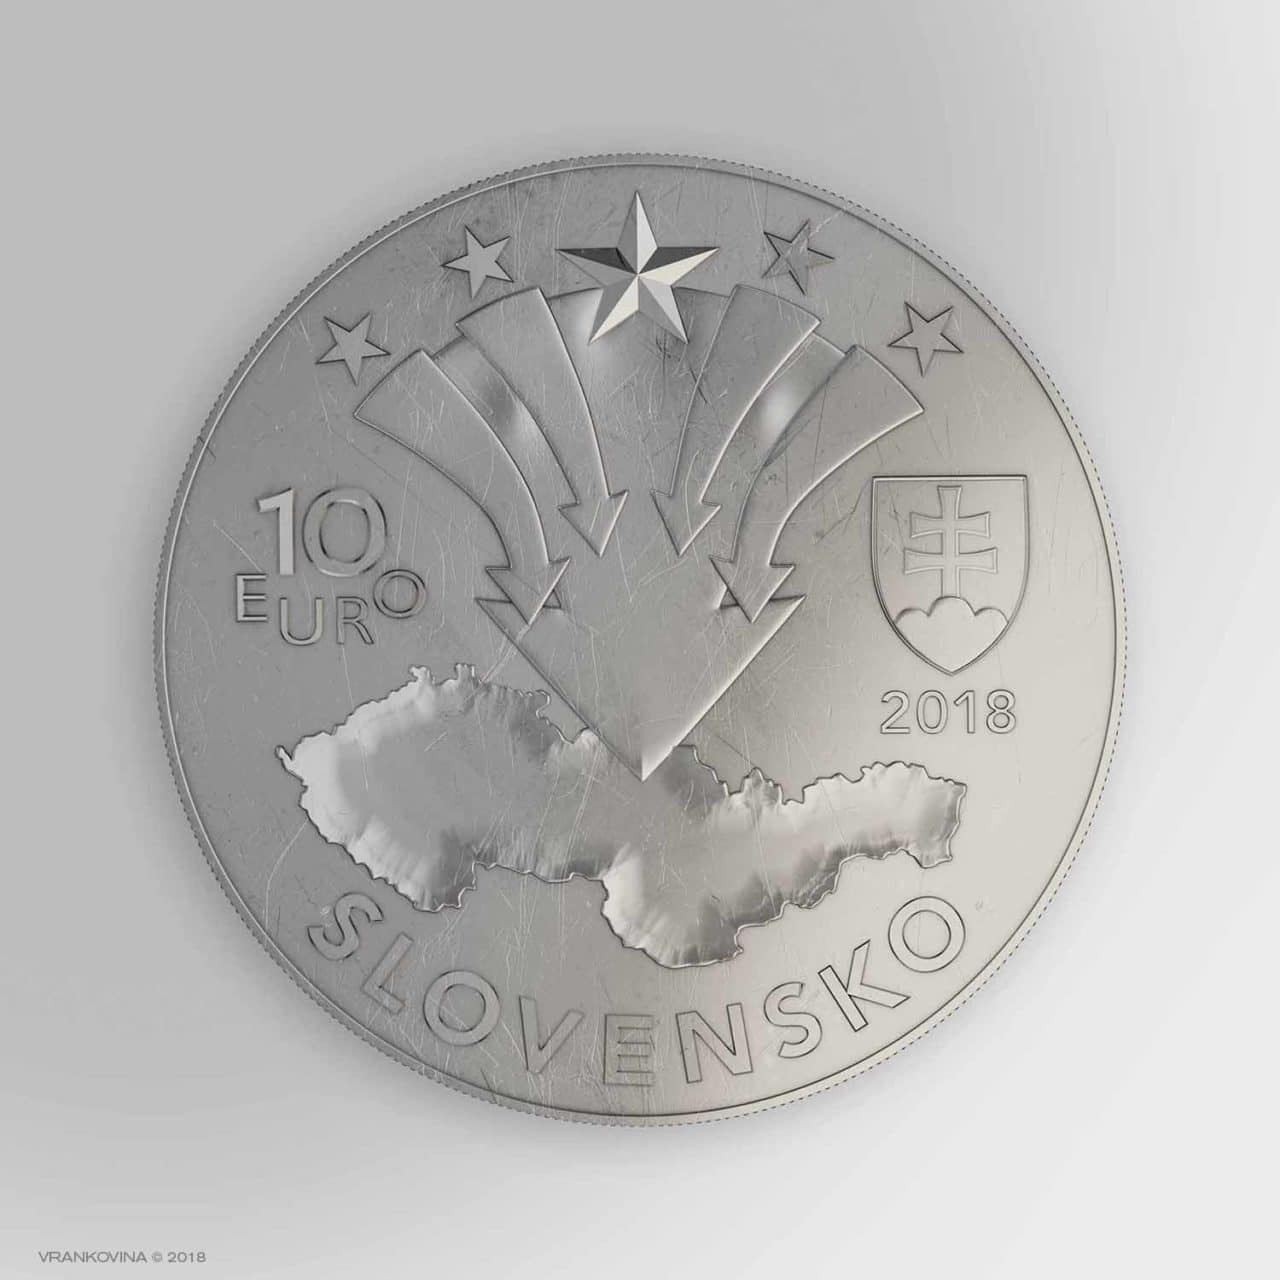 Münze zum 50. Jubiläum des August 1968, Reverz